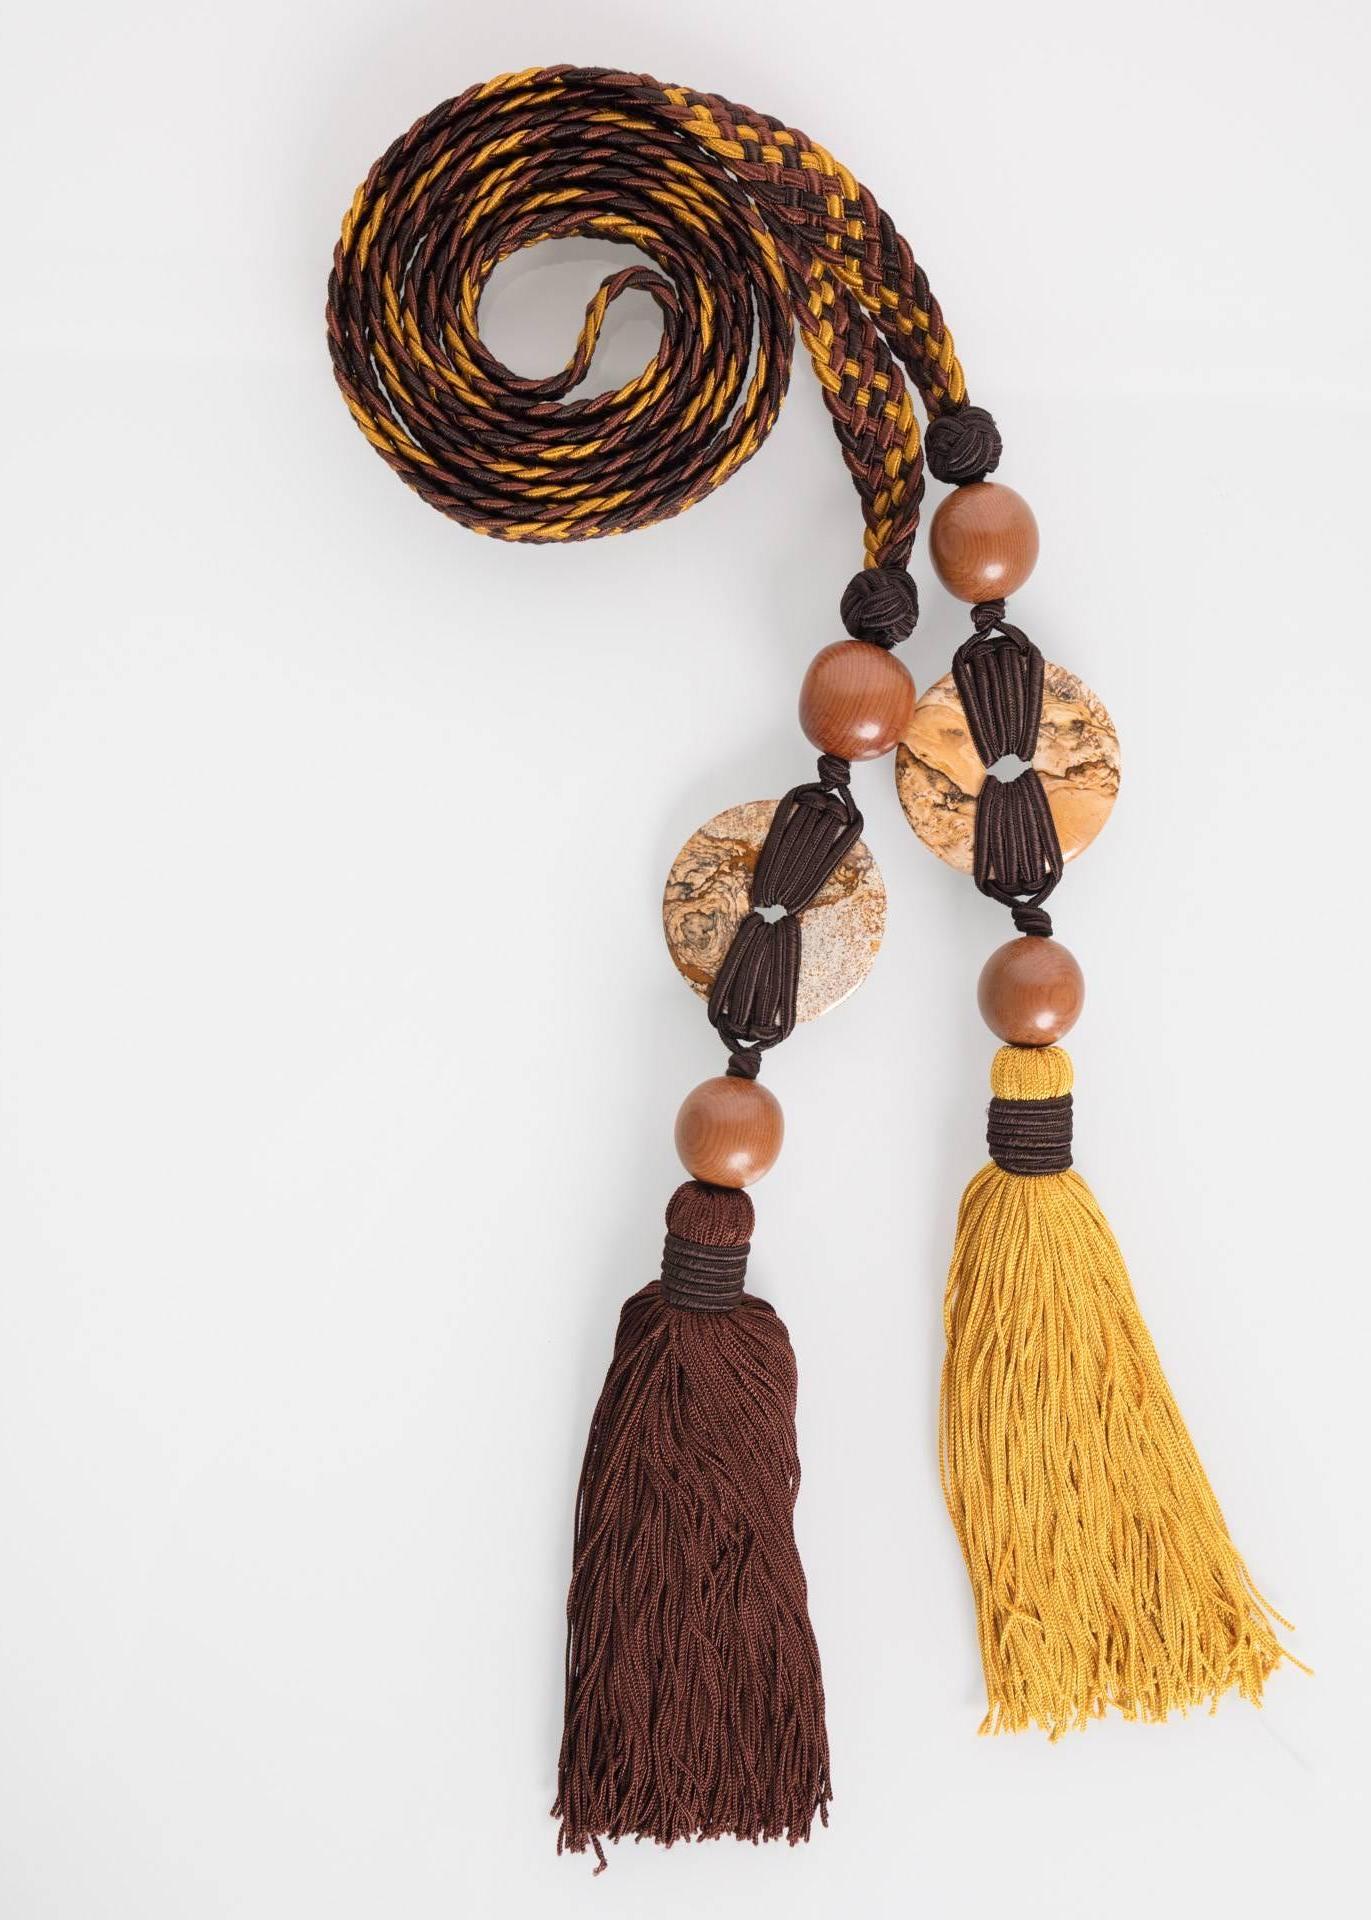 Afrikanische Perlen und traditionelle afrikanische Elemente finden sich in allen Entwürfen von Saint Laurent. Indem Saint Laurent sich von den verschiedenen handwerklichen Praktiken des Kontinents inspirieren ließ, konnte er die afrikanischen